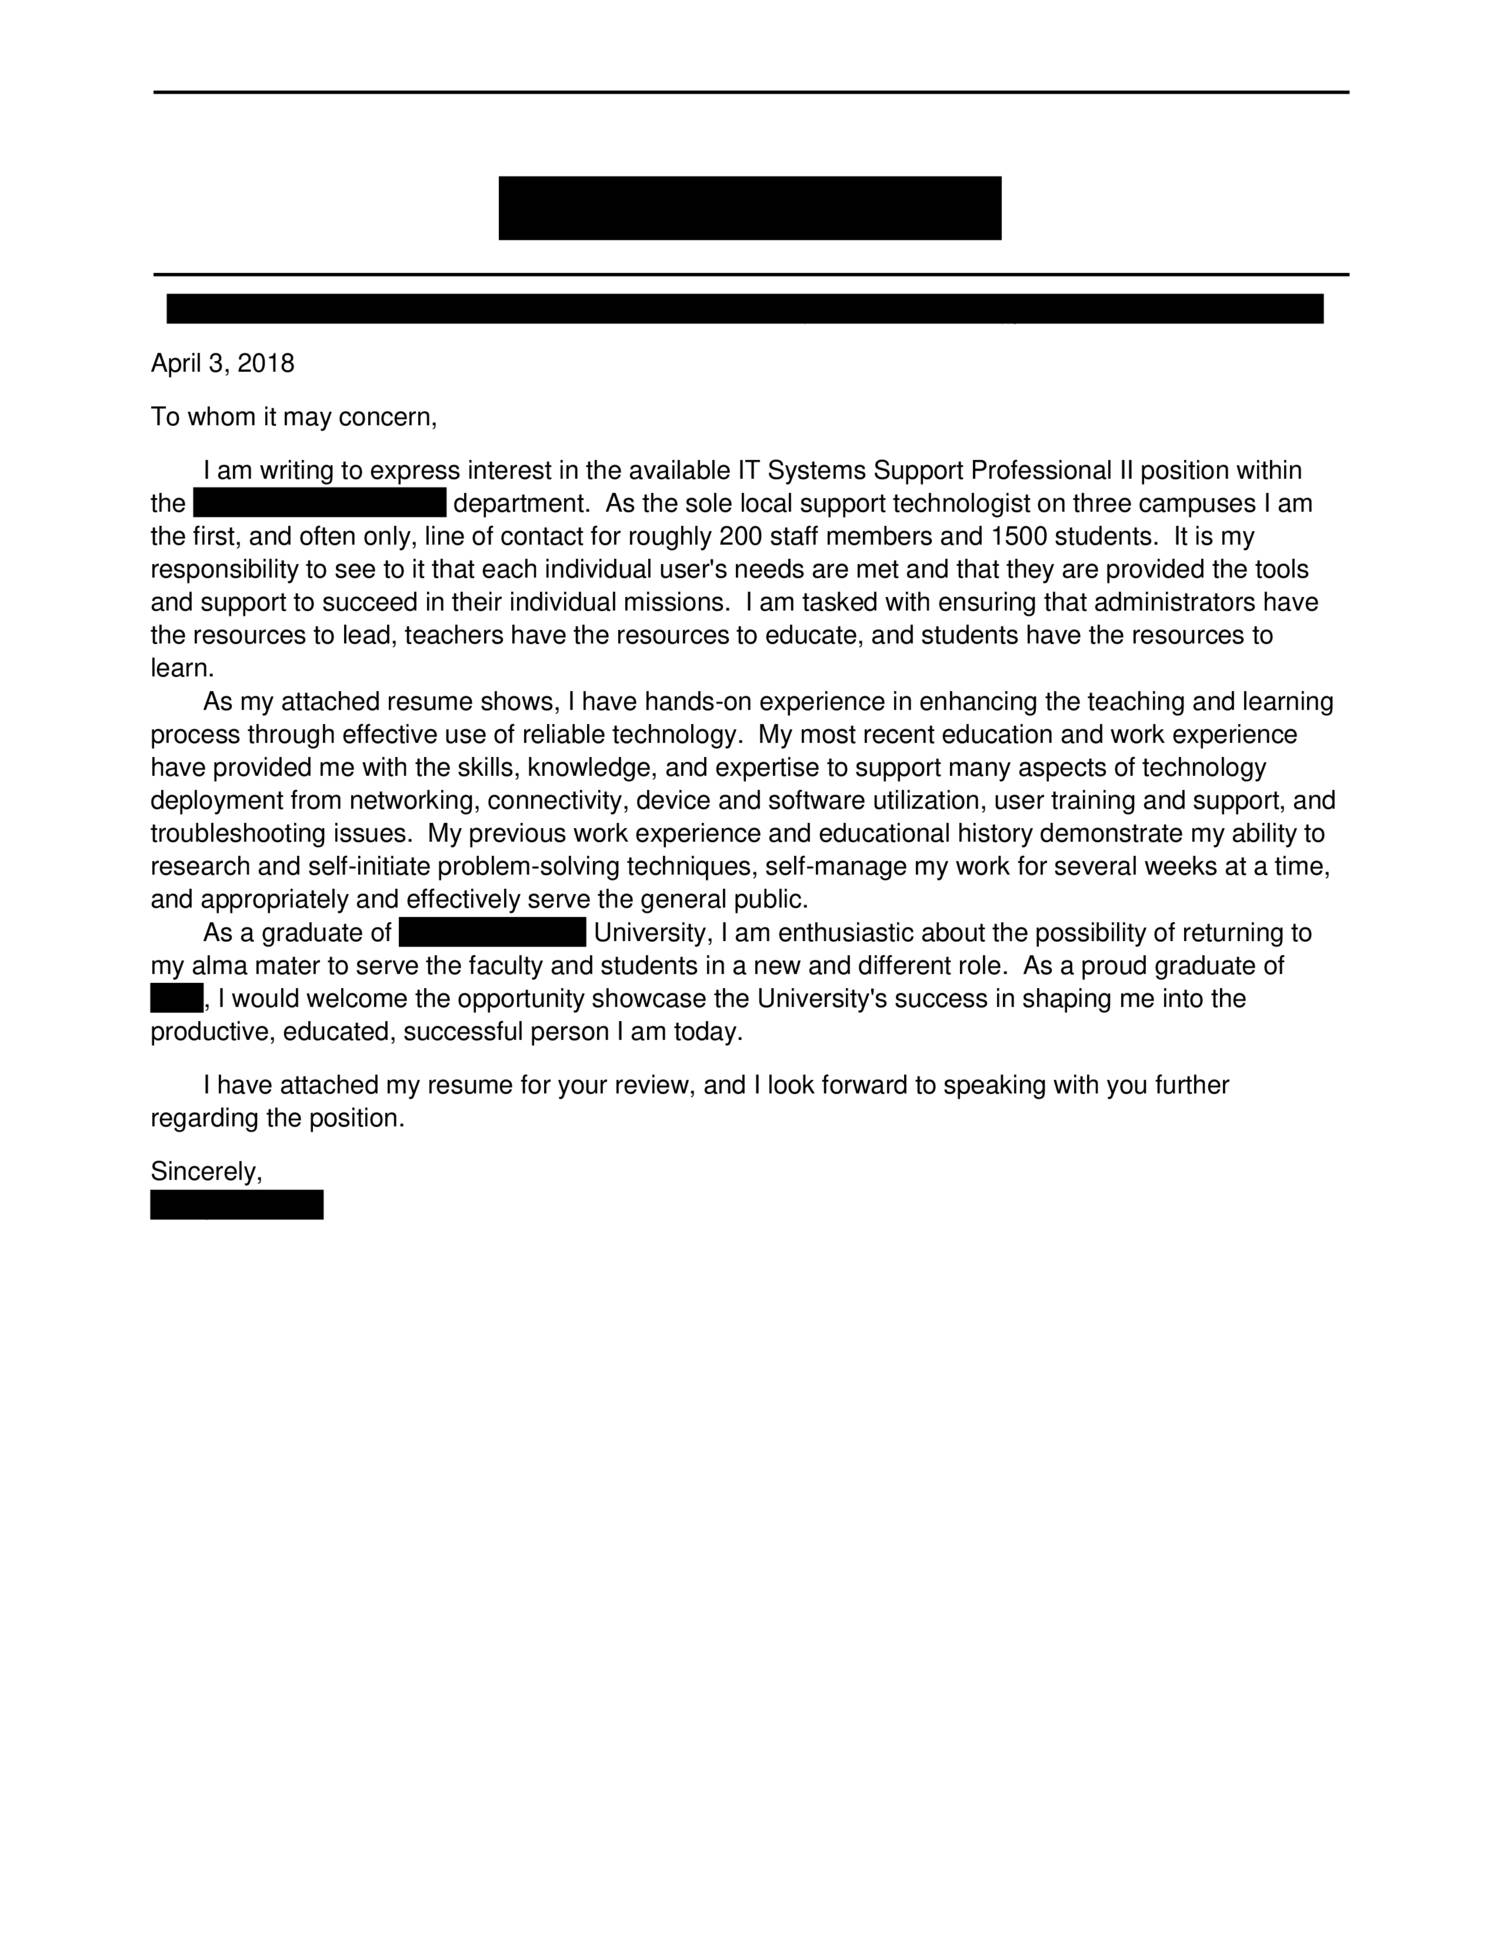 cover letter resume reddit